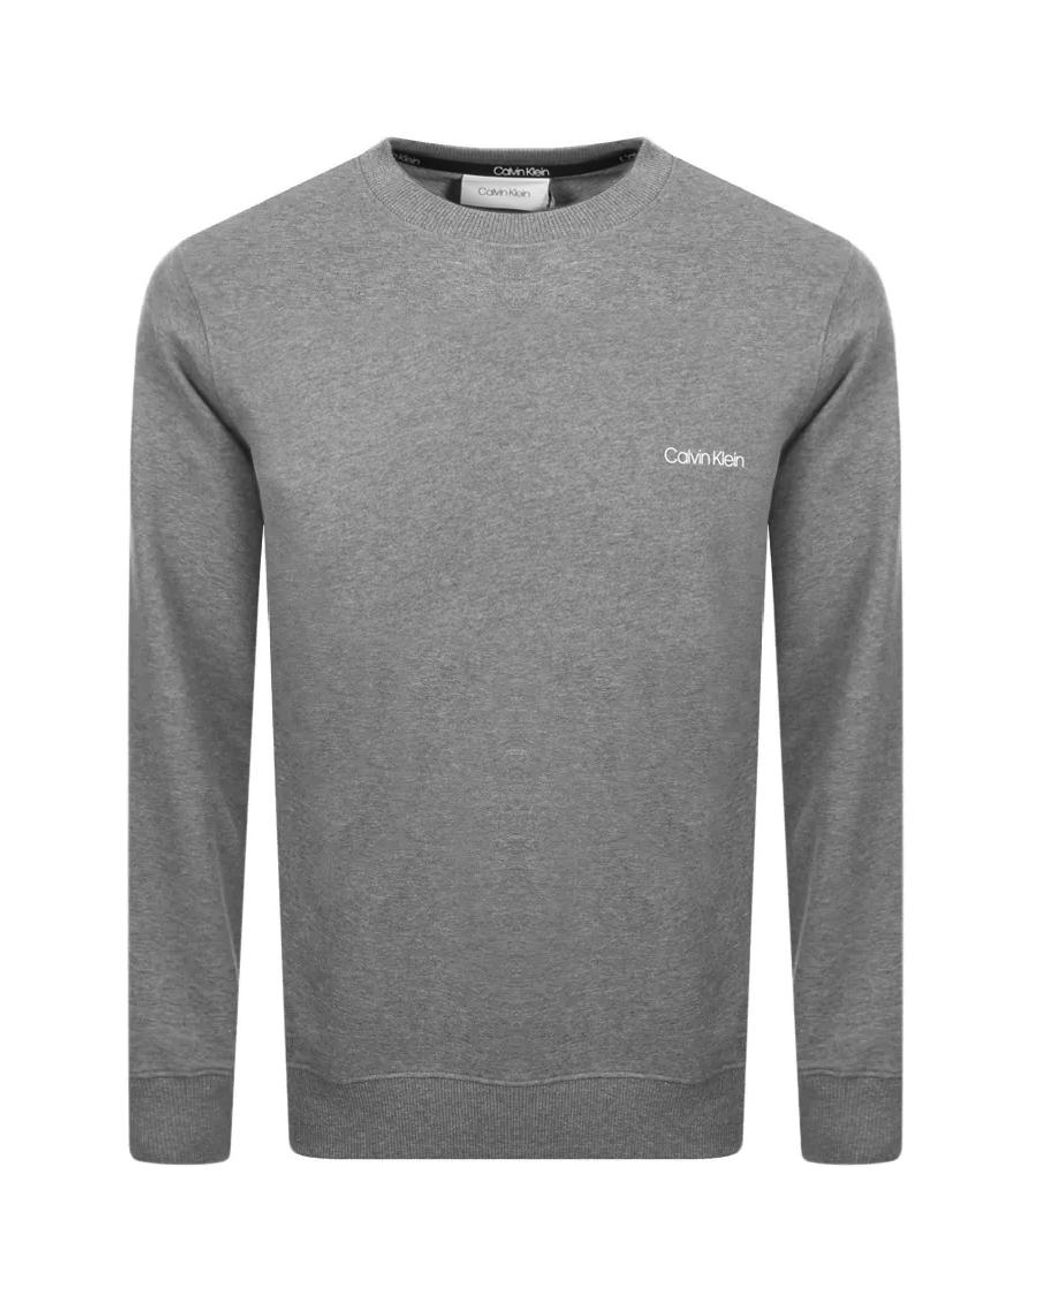 Calvin Klein Cotton Logo Crew Neck Sweatshirt in Grey (Gray) for Men - Lyst